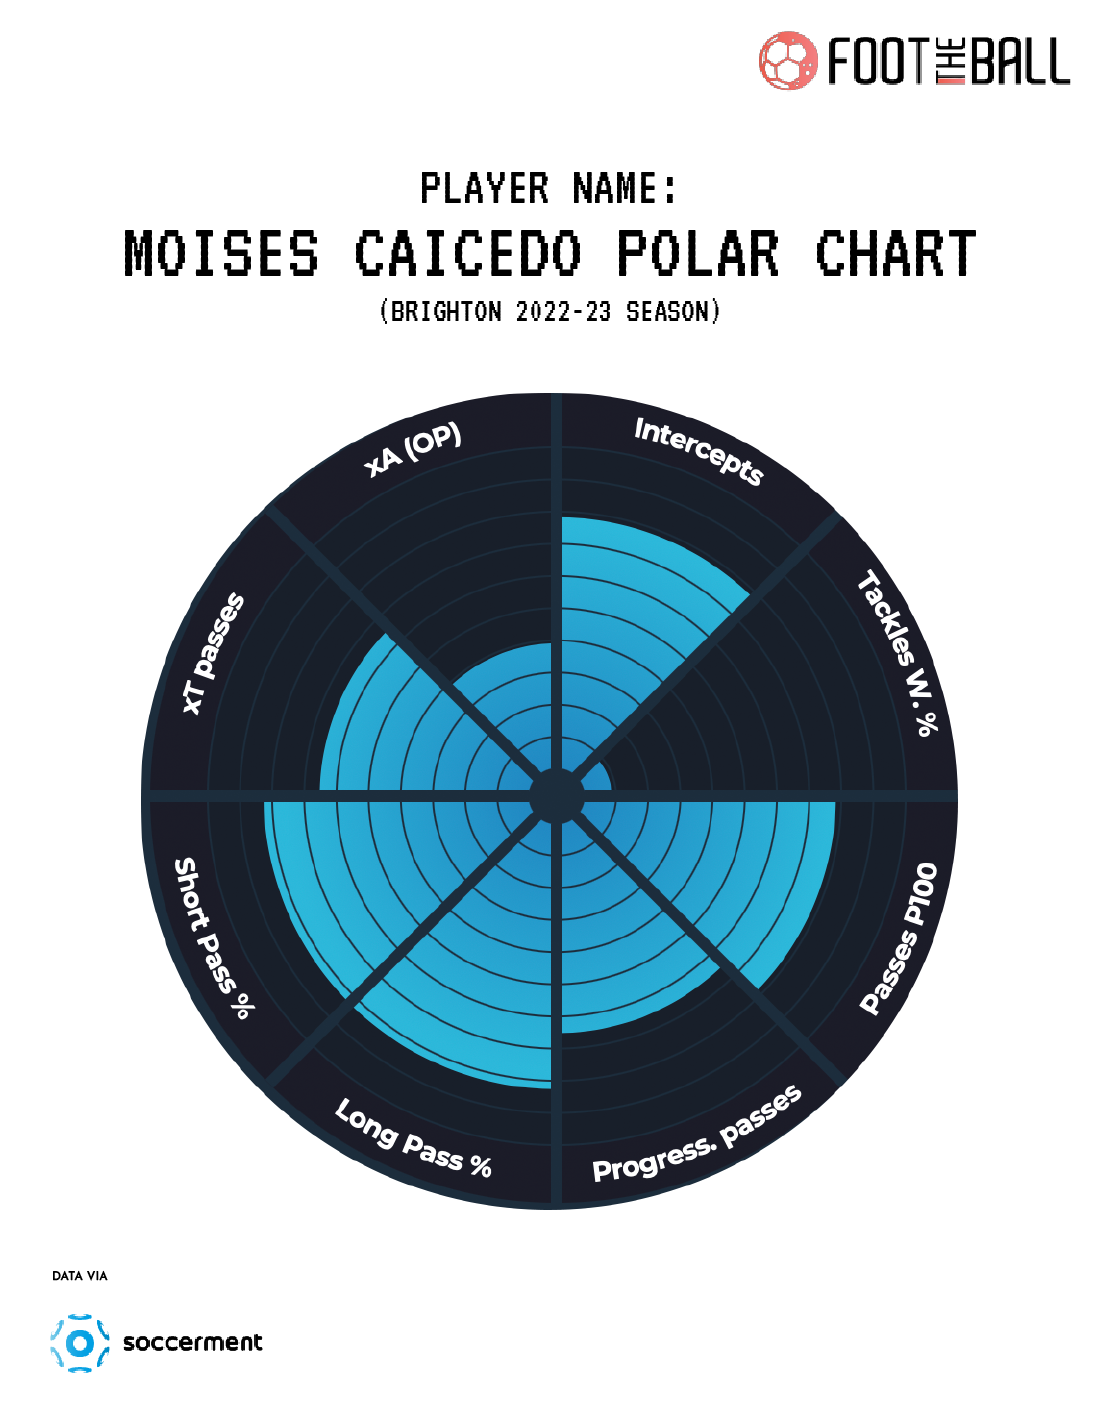 Moises Caicedo Polar Chart